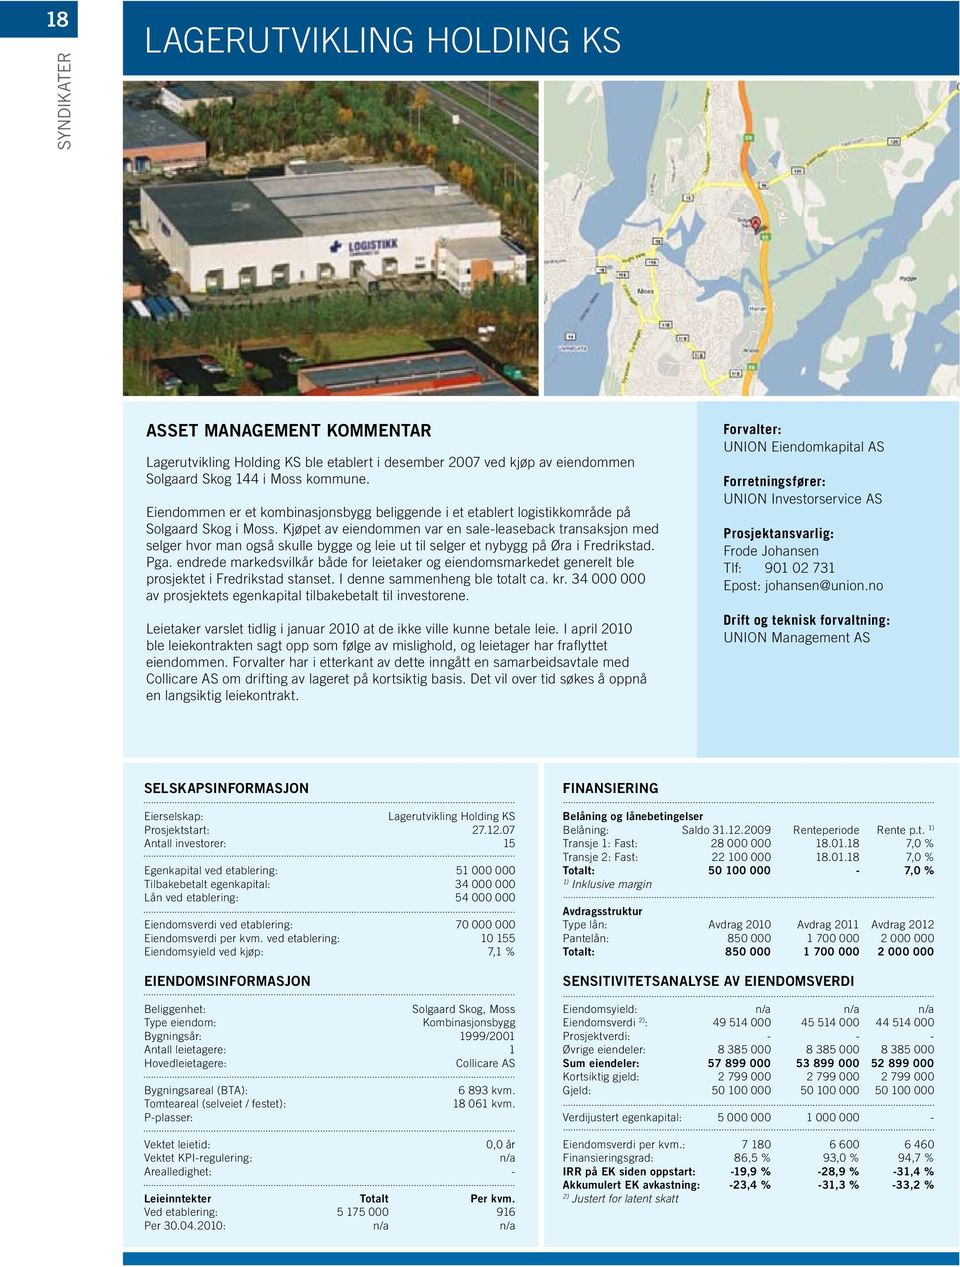 Kjøpet av eiendommen var en sale-leaseback transaksjon med selger hvor man også skulle bygge og leie ut til selger et nybygg på Øra i Fredrikstad. Pga.